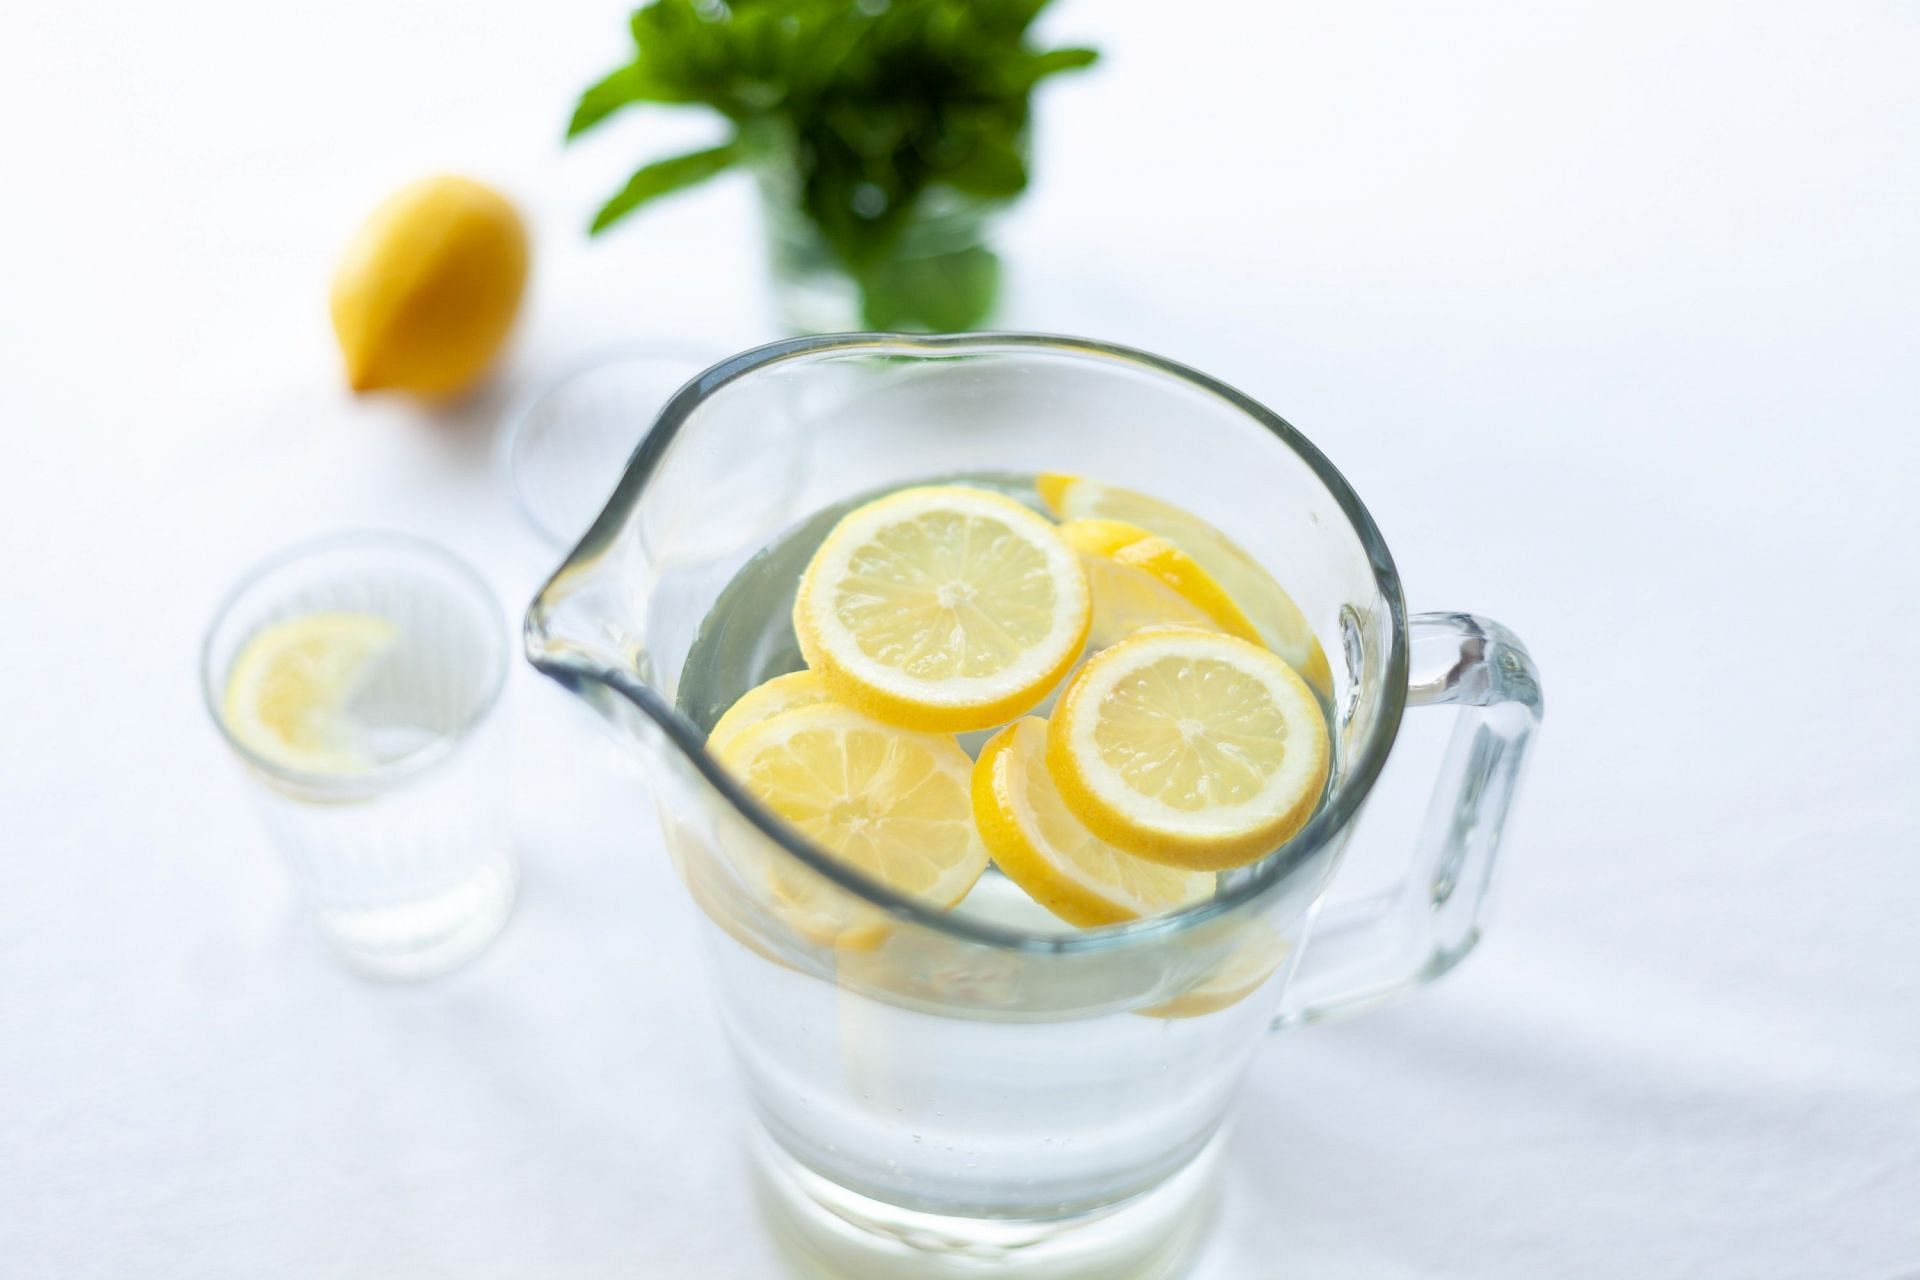 lemon juice helps in naturally lighten your hair. (Image via Pexels / Julia Zolotova)